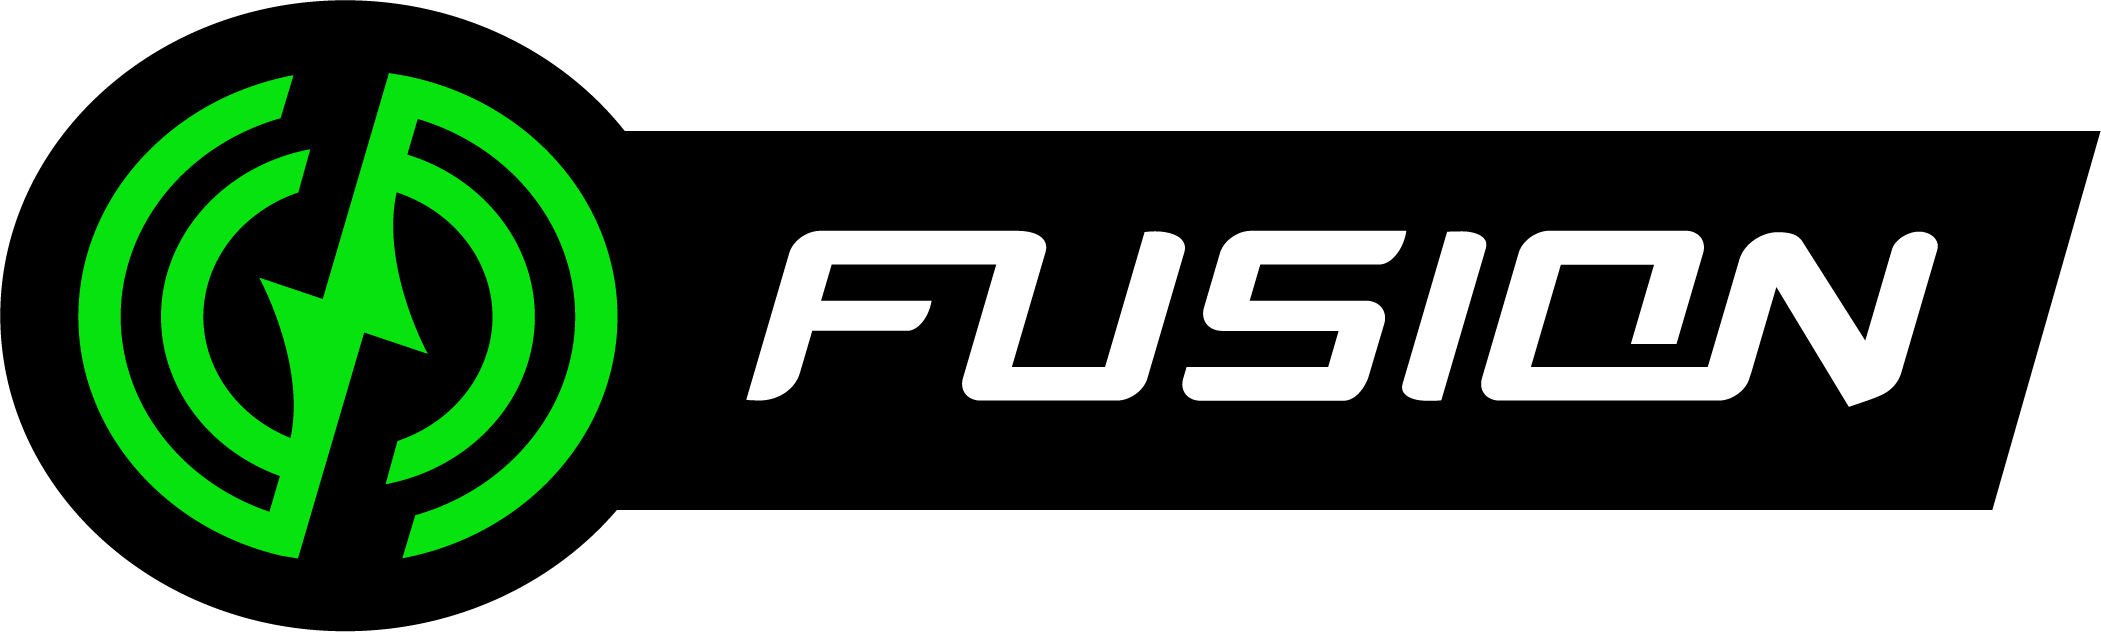 Fecon Fusion Logo